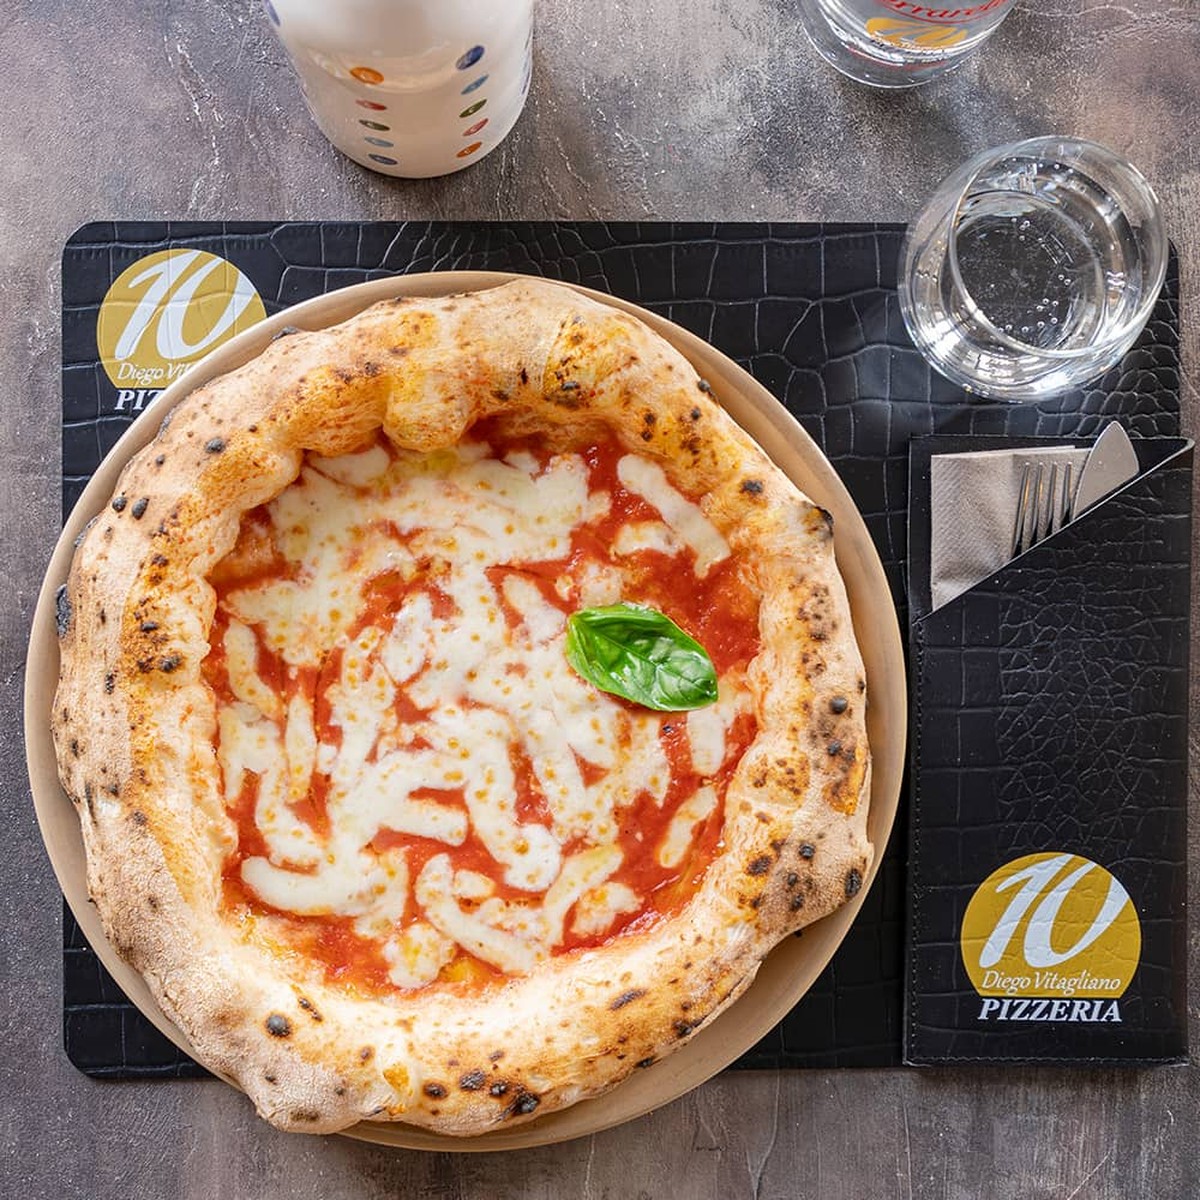 Quanto custa comer nas melhores pizzarias do mundo em 2023?